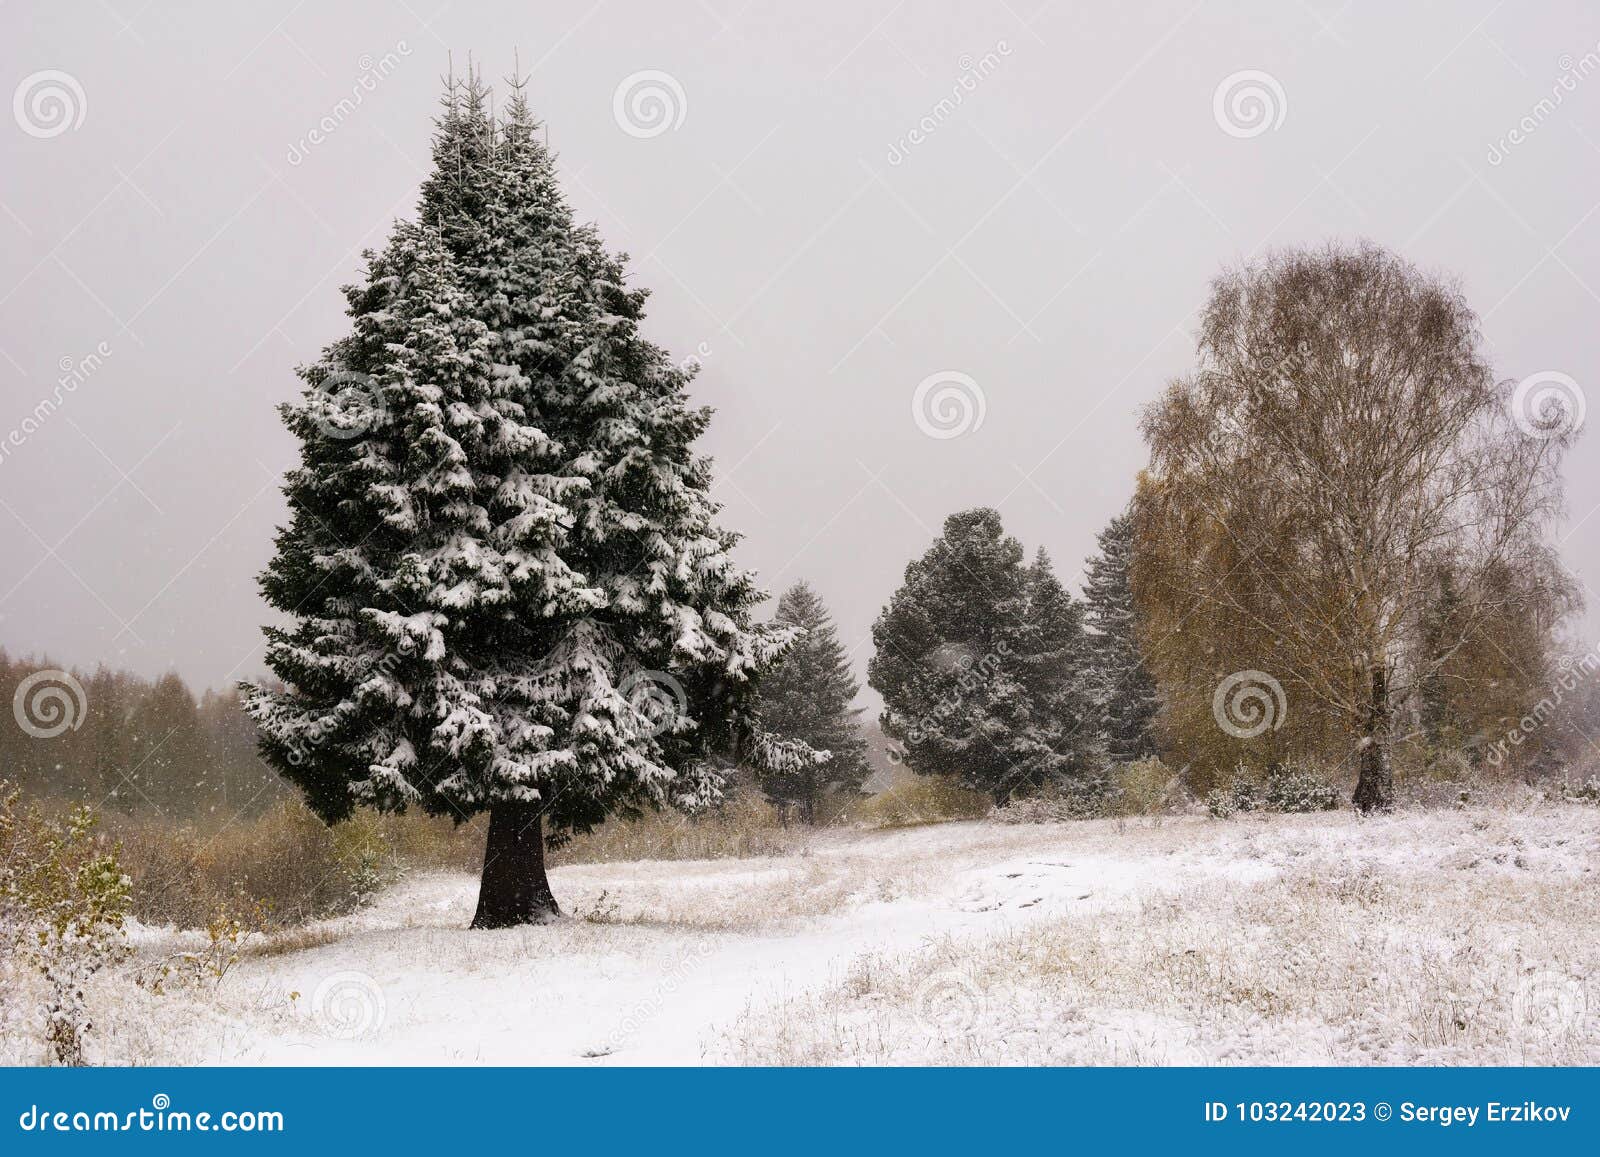 Árvore De Natal Cena Da Neve Da árvore Da Pele Do Inverno Fundo, Neve E  Pinheiro Do Natal Imagem de Stock - Imagem de natal, dezembro: 103242023